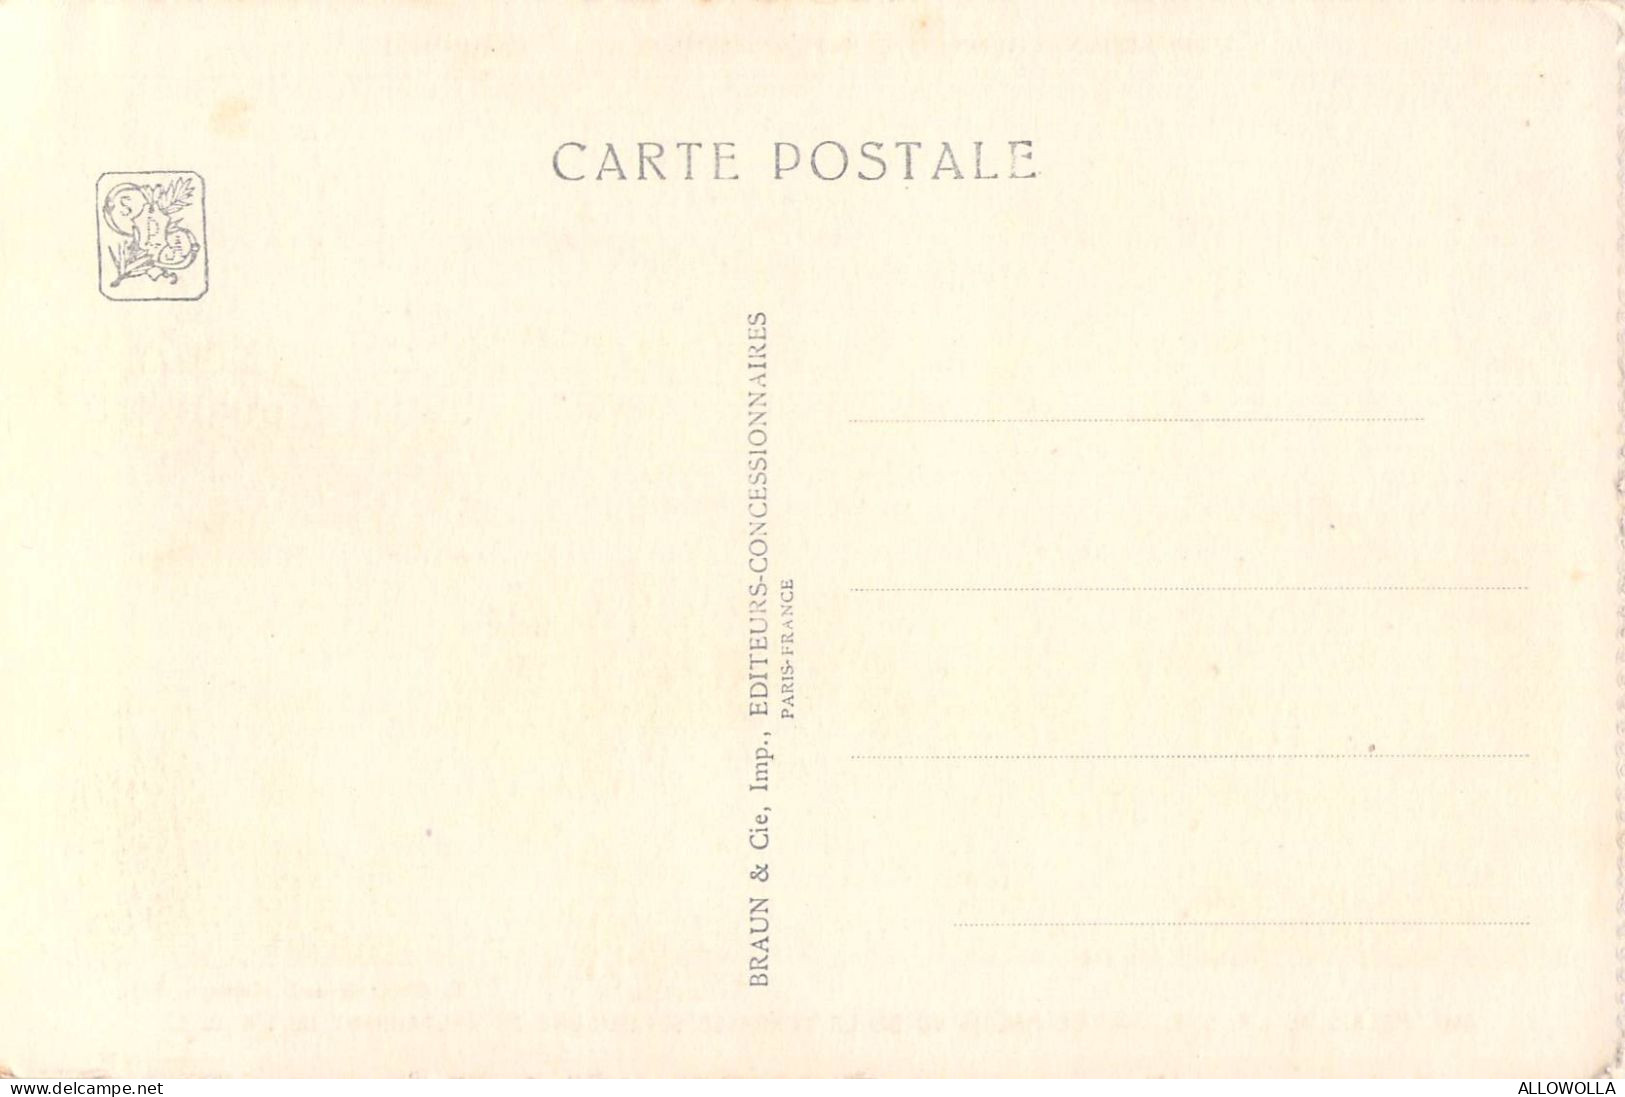 26885 " EXPOSITION COLONIALE INTERNATIONALE-PARIS1931-SECT.DE L'INDOCHINE-PAVILLON DE L'ANNAM "-CART.POST. NON SPED. - Exposiciones